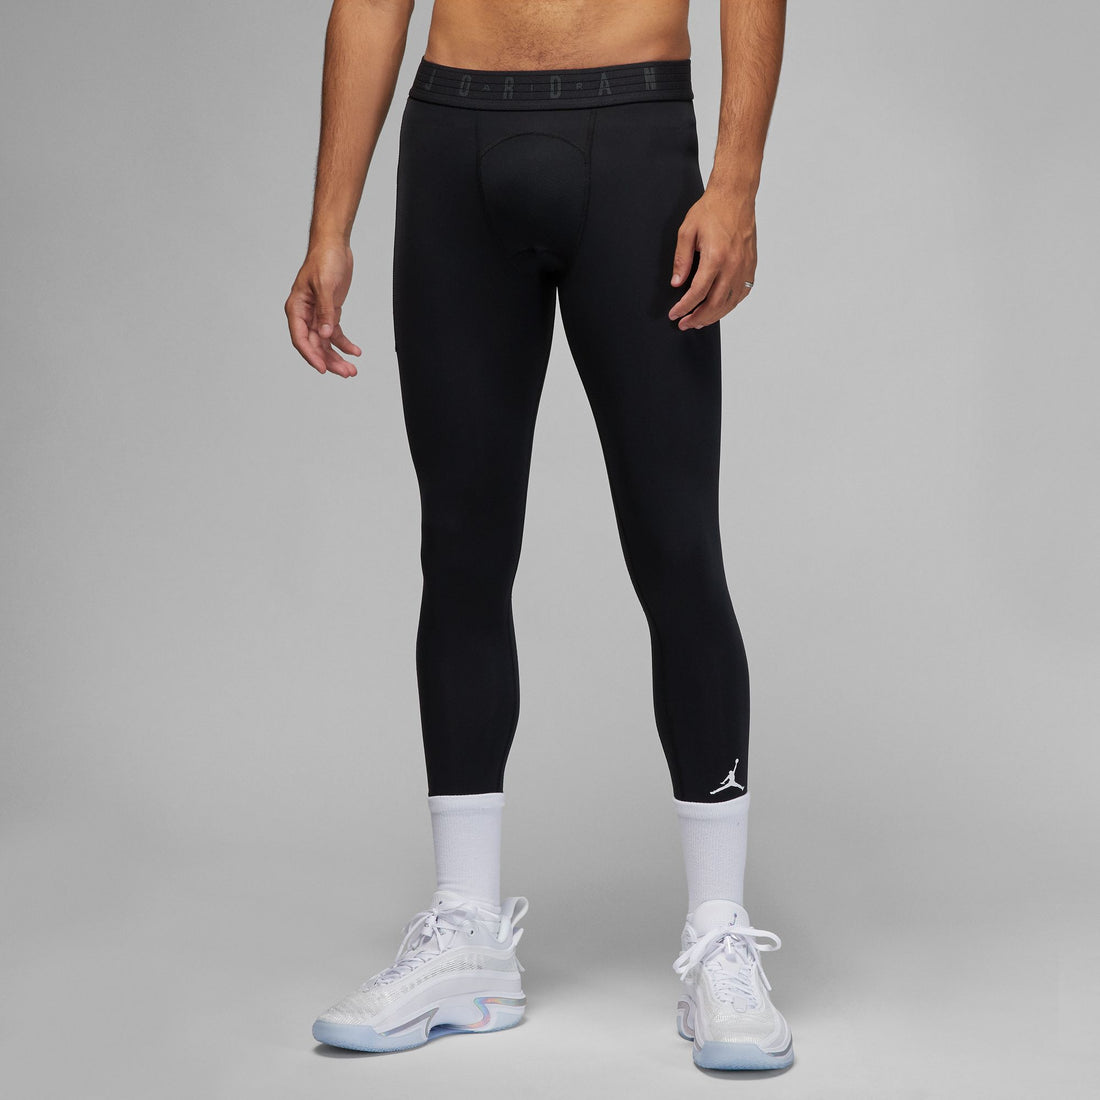 Nike Air Jordan leggings in black